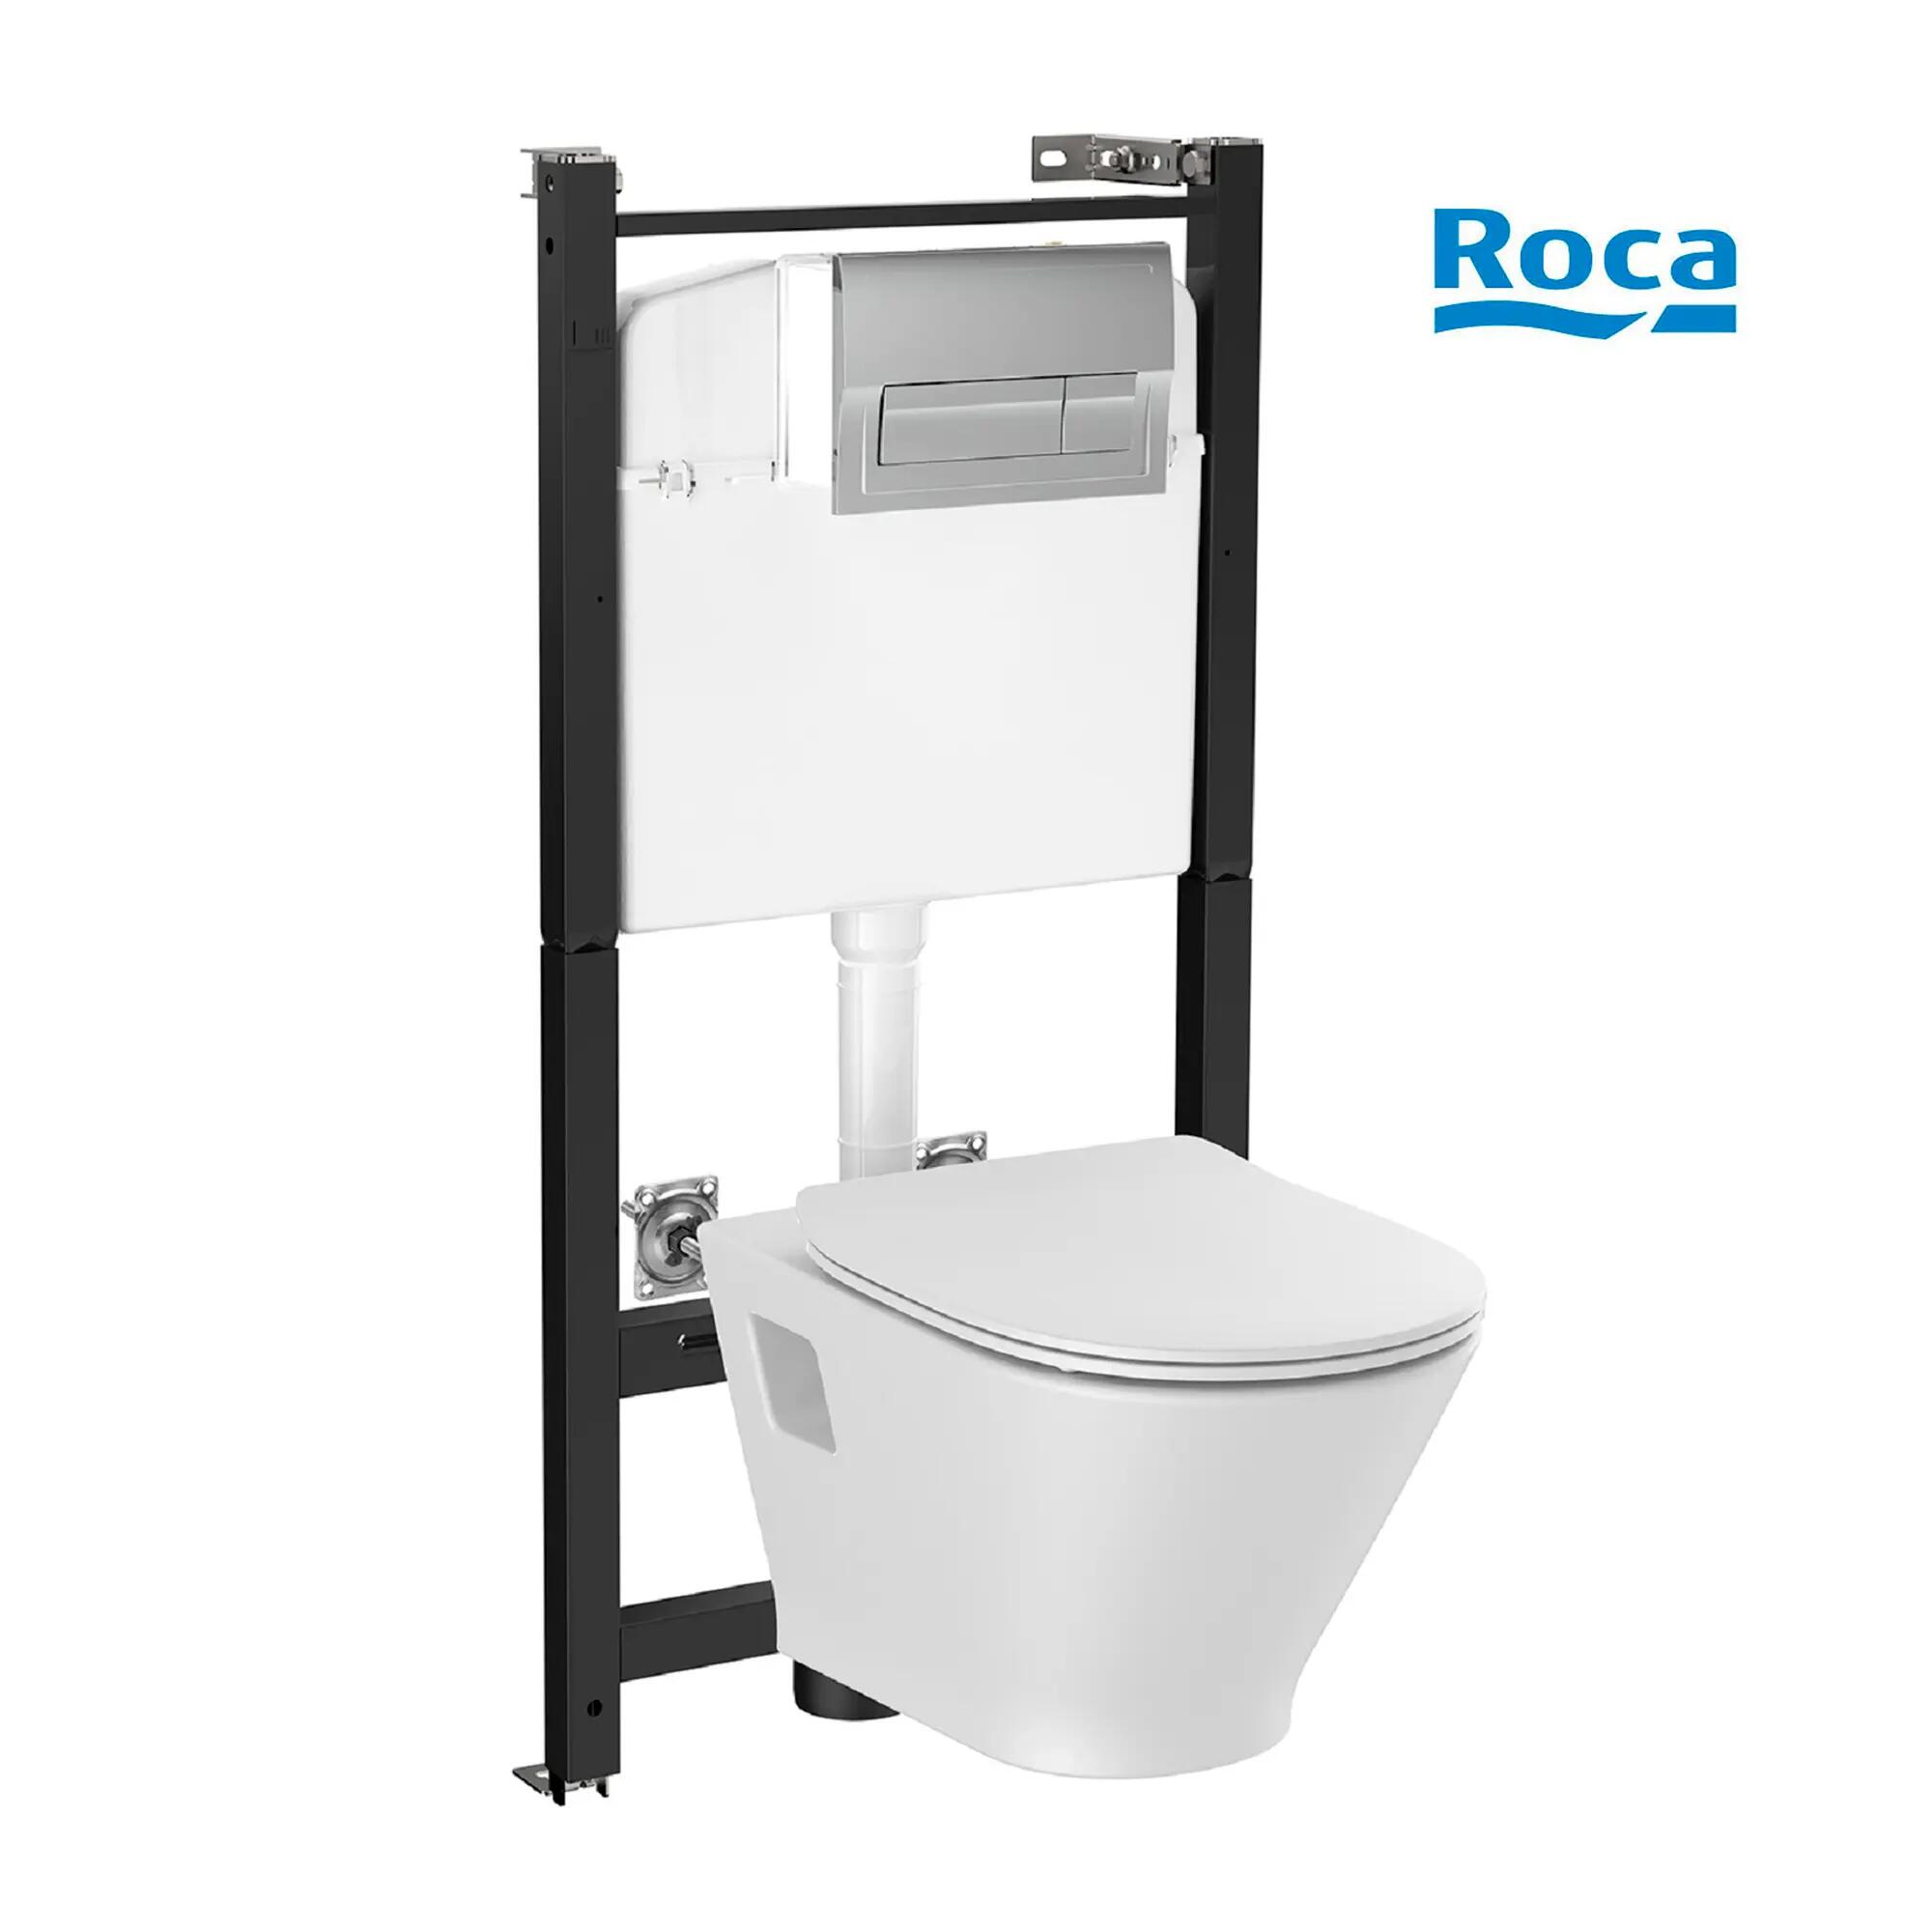 Pack WC suspendido ROCA Heracles con tapa amortiguada